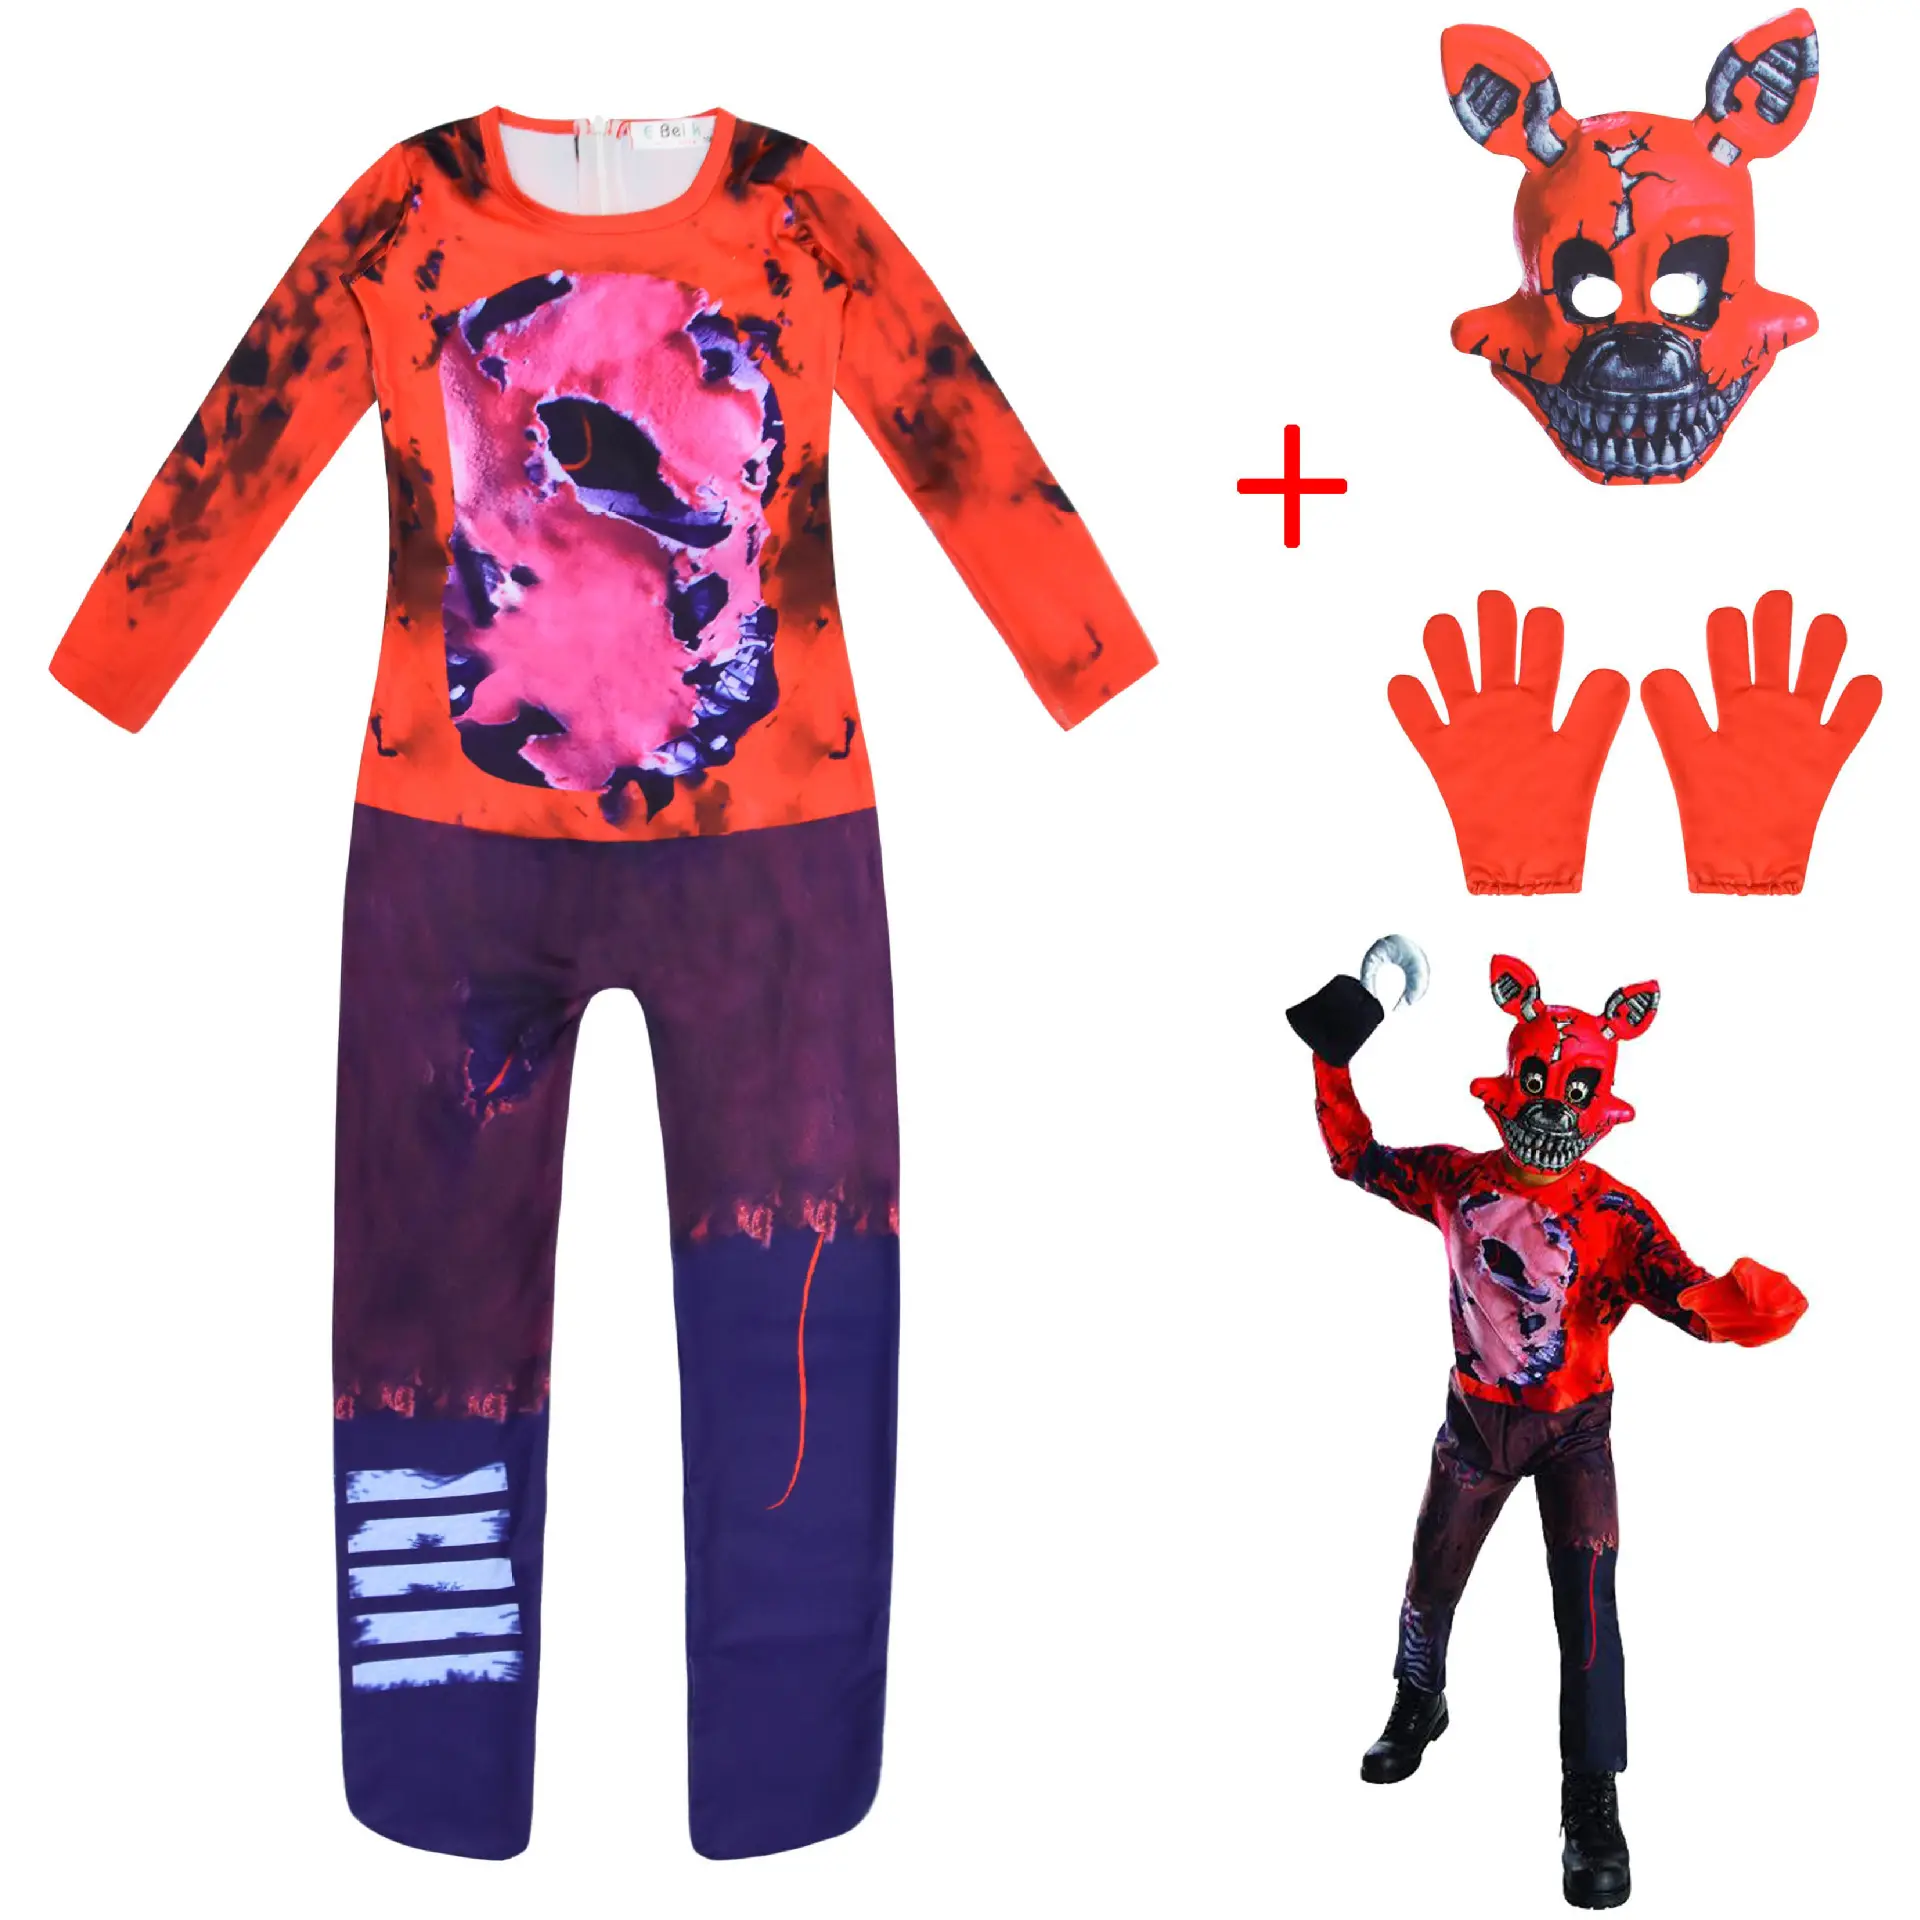 Personaggio FNAF di alta qualità Cosplay per bambini Hororr Bear body Costume adulto Halloween Carnival Party